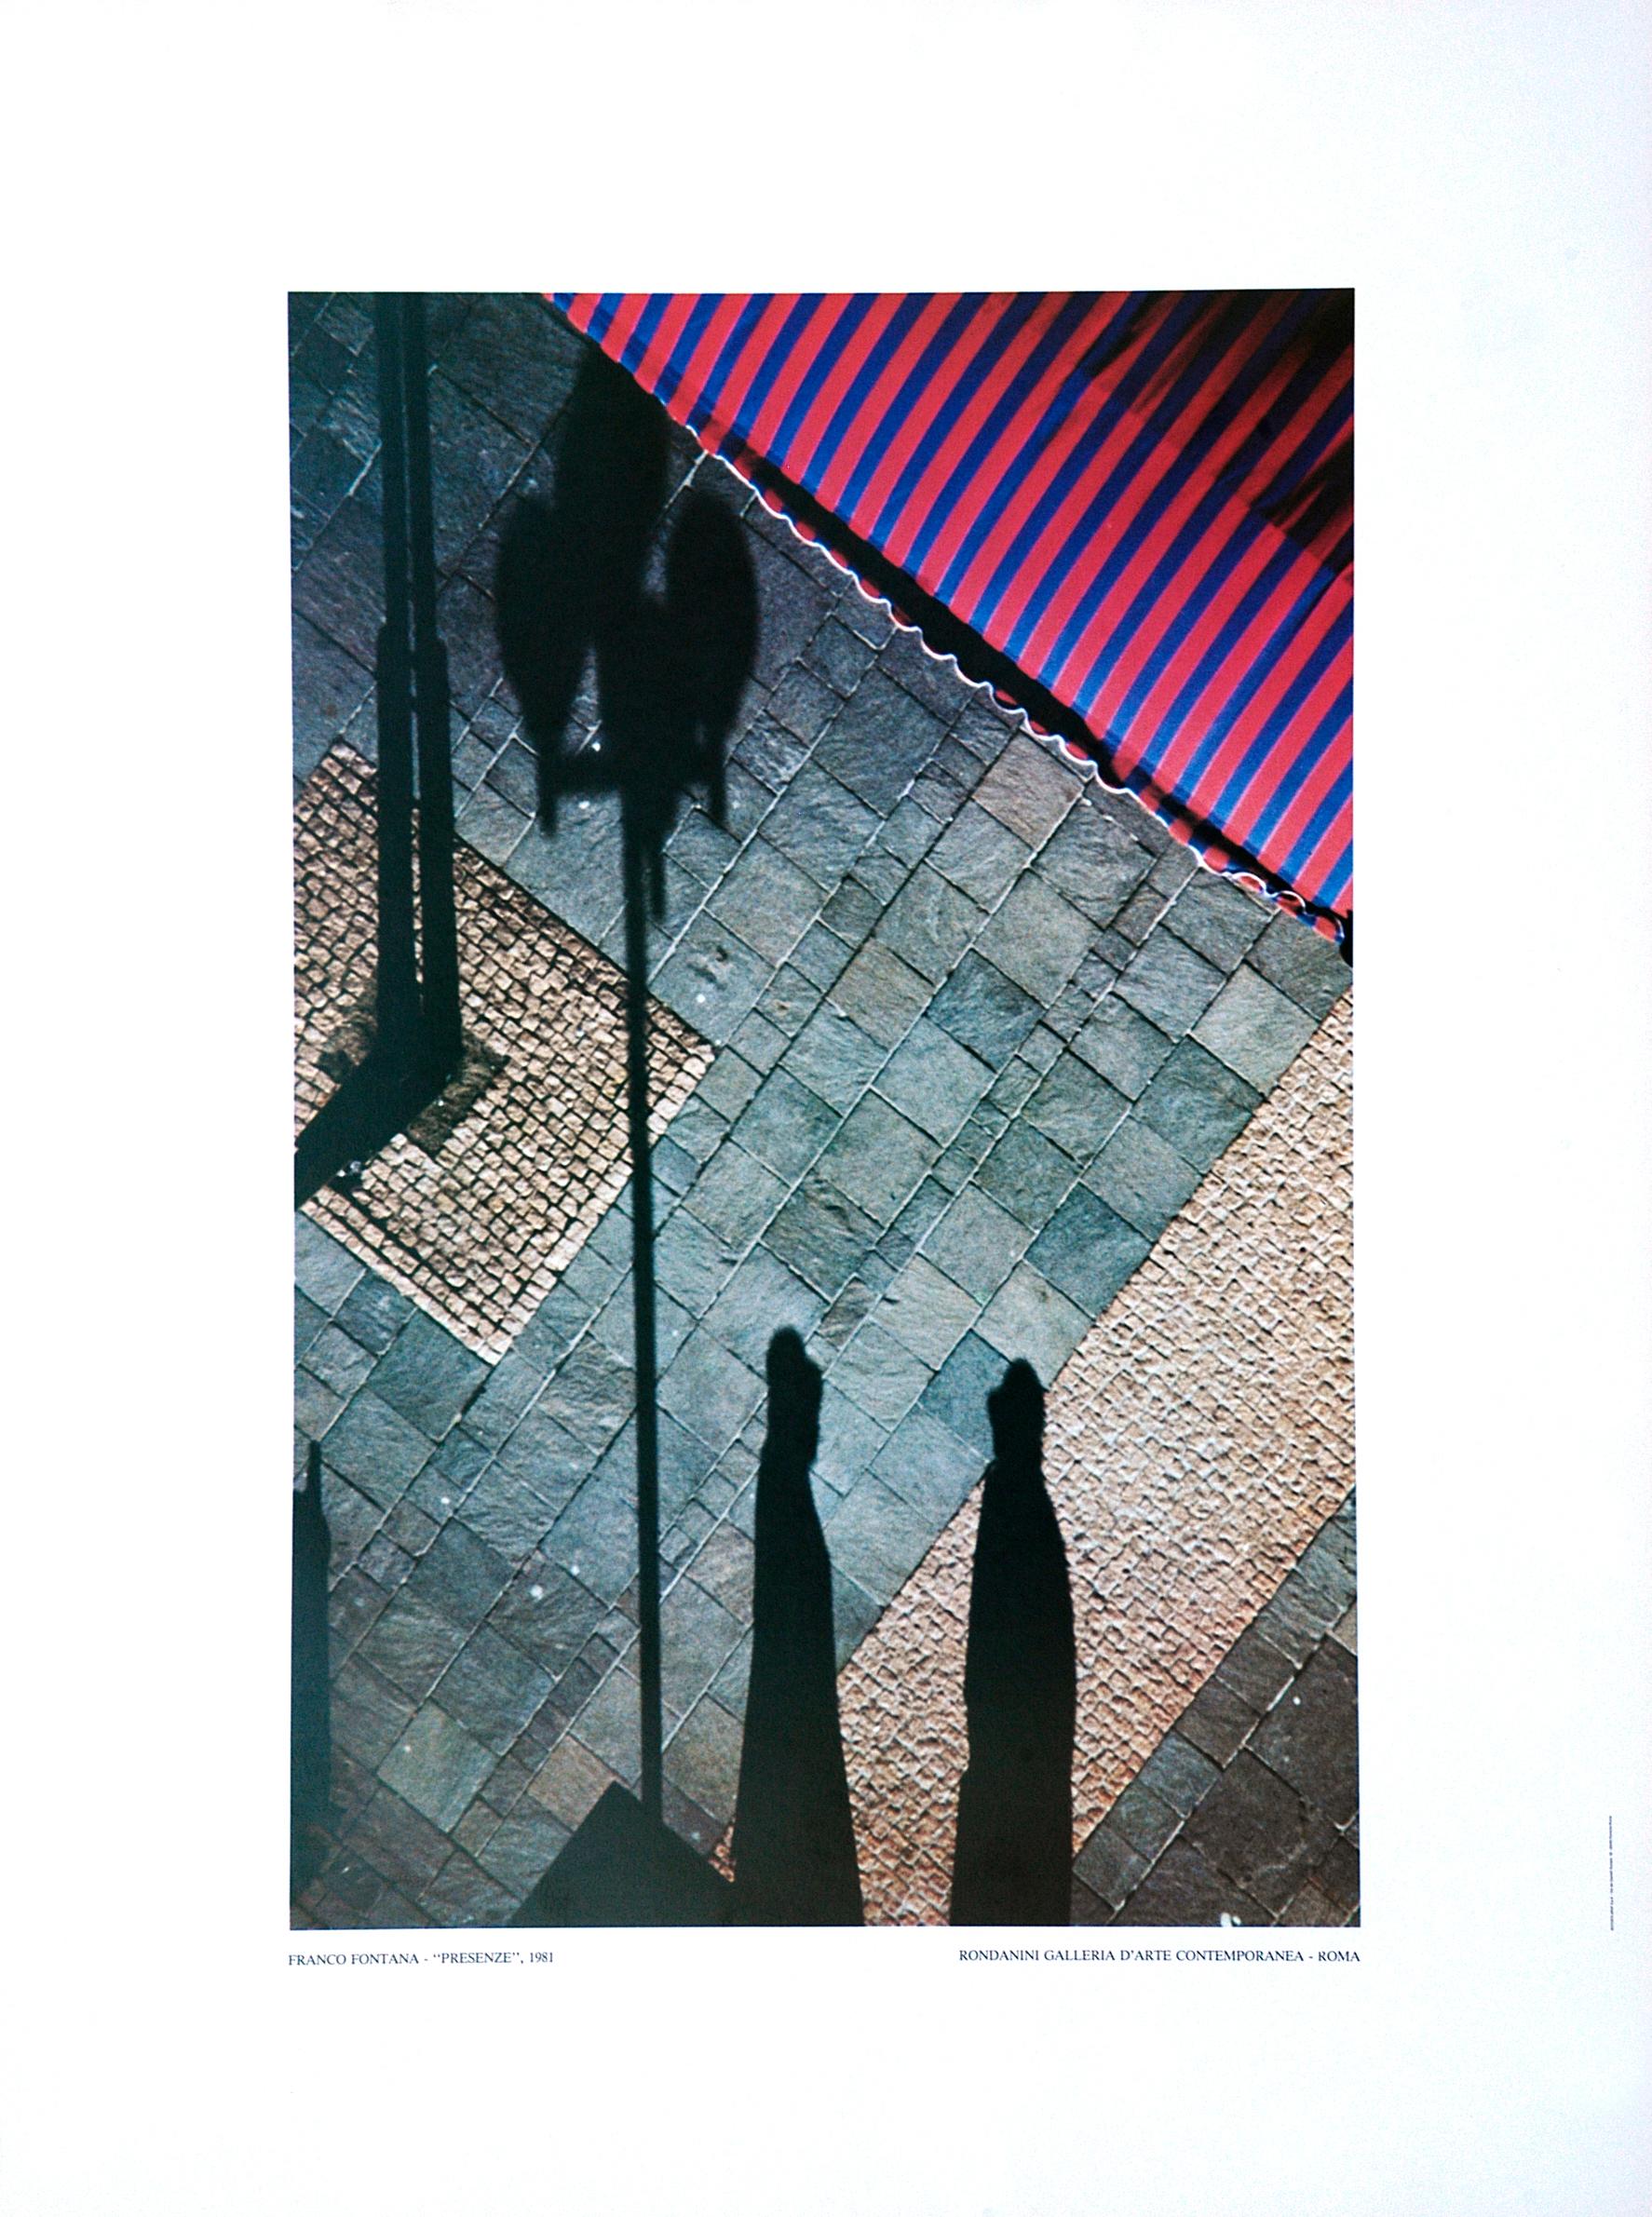 Presenze ist ein Druck von Franco Fontana aus dem Jahr 1981.

Offsetdruck. Rondanini Galleria D'arte Contemporanea - Roma.

Farbiges Poster nach einer Fotografie von Franco Fontana (Modena, 1933), einem der bekanntesten italienischen Fotografen der